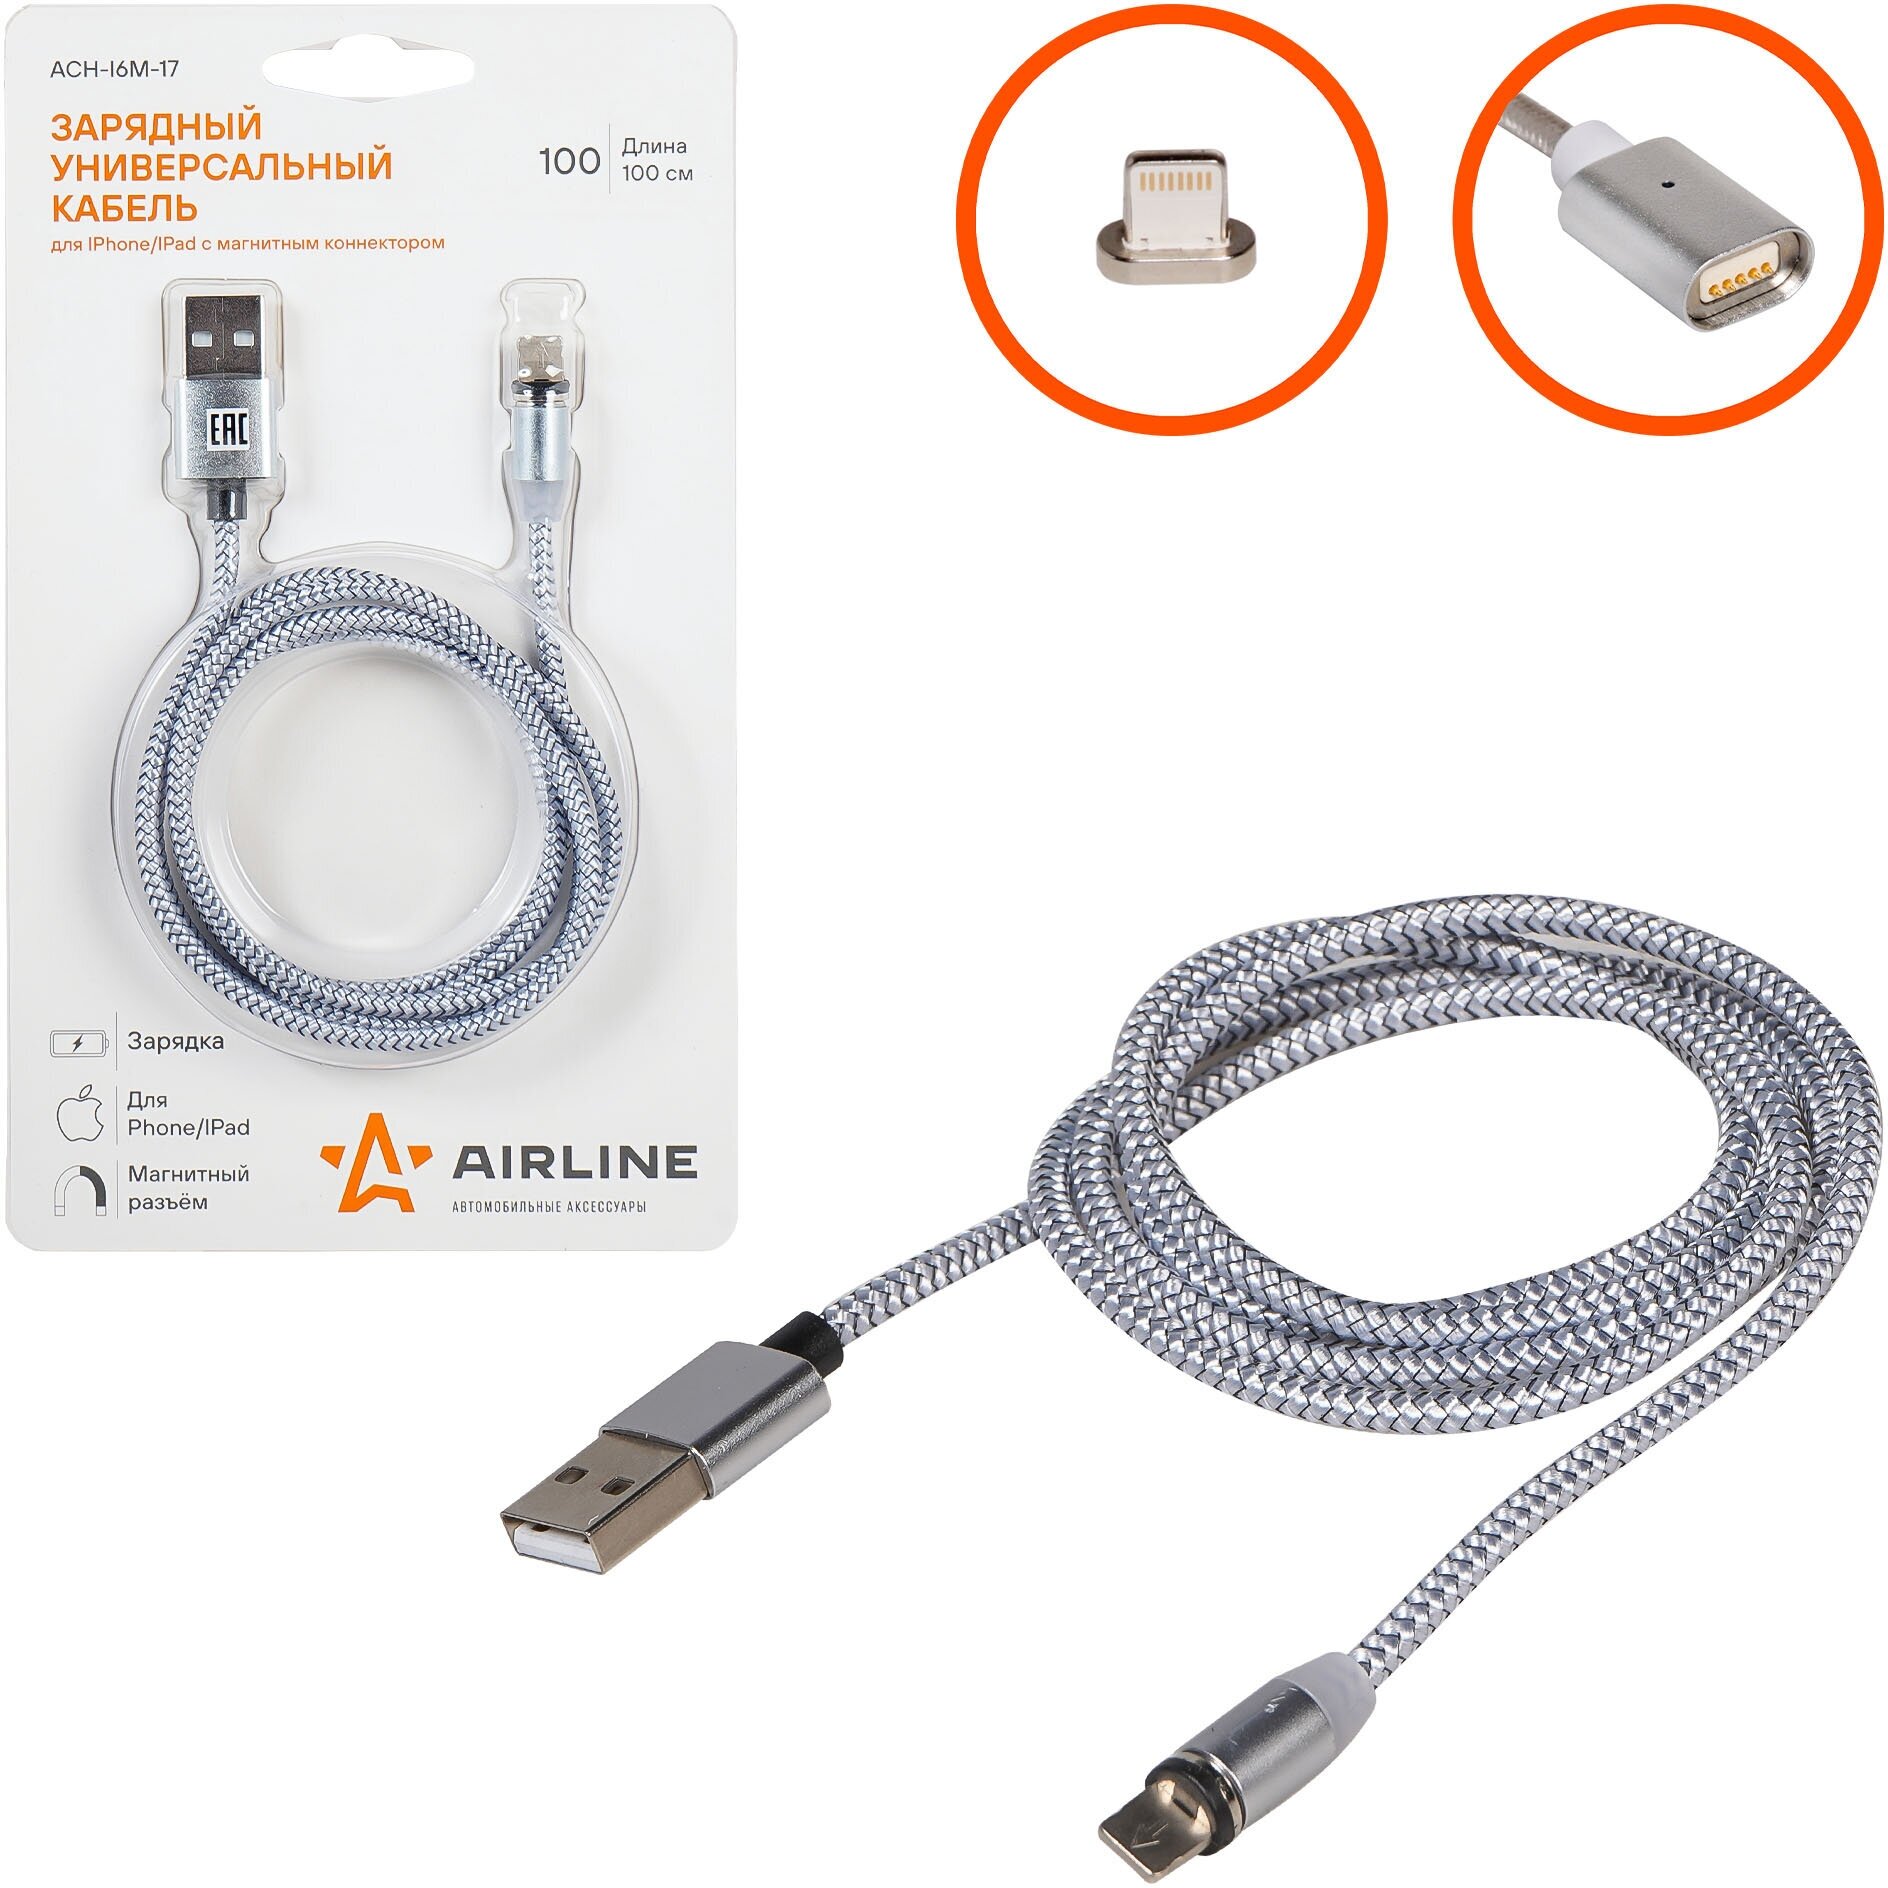 Зарядный кабель для Iphone/IPad с магнитным коннектором AIRLINE